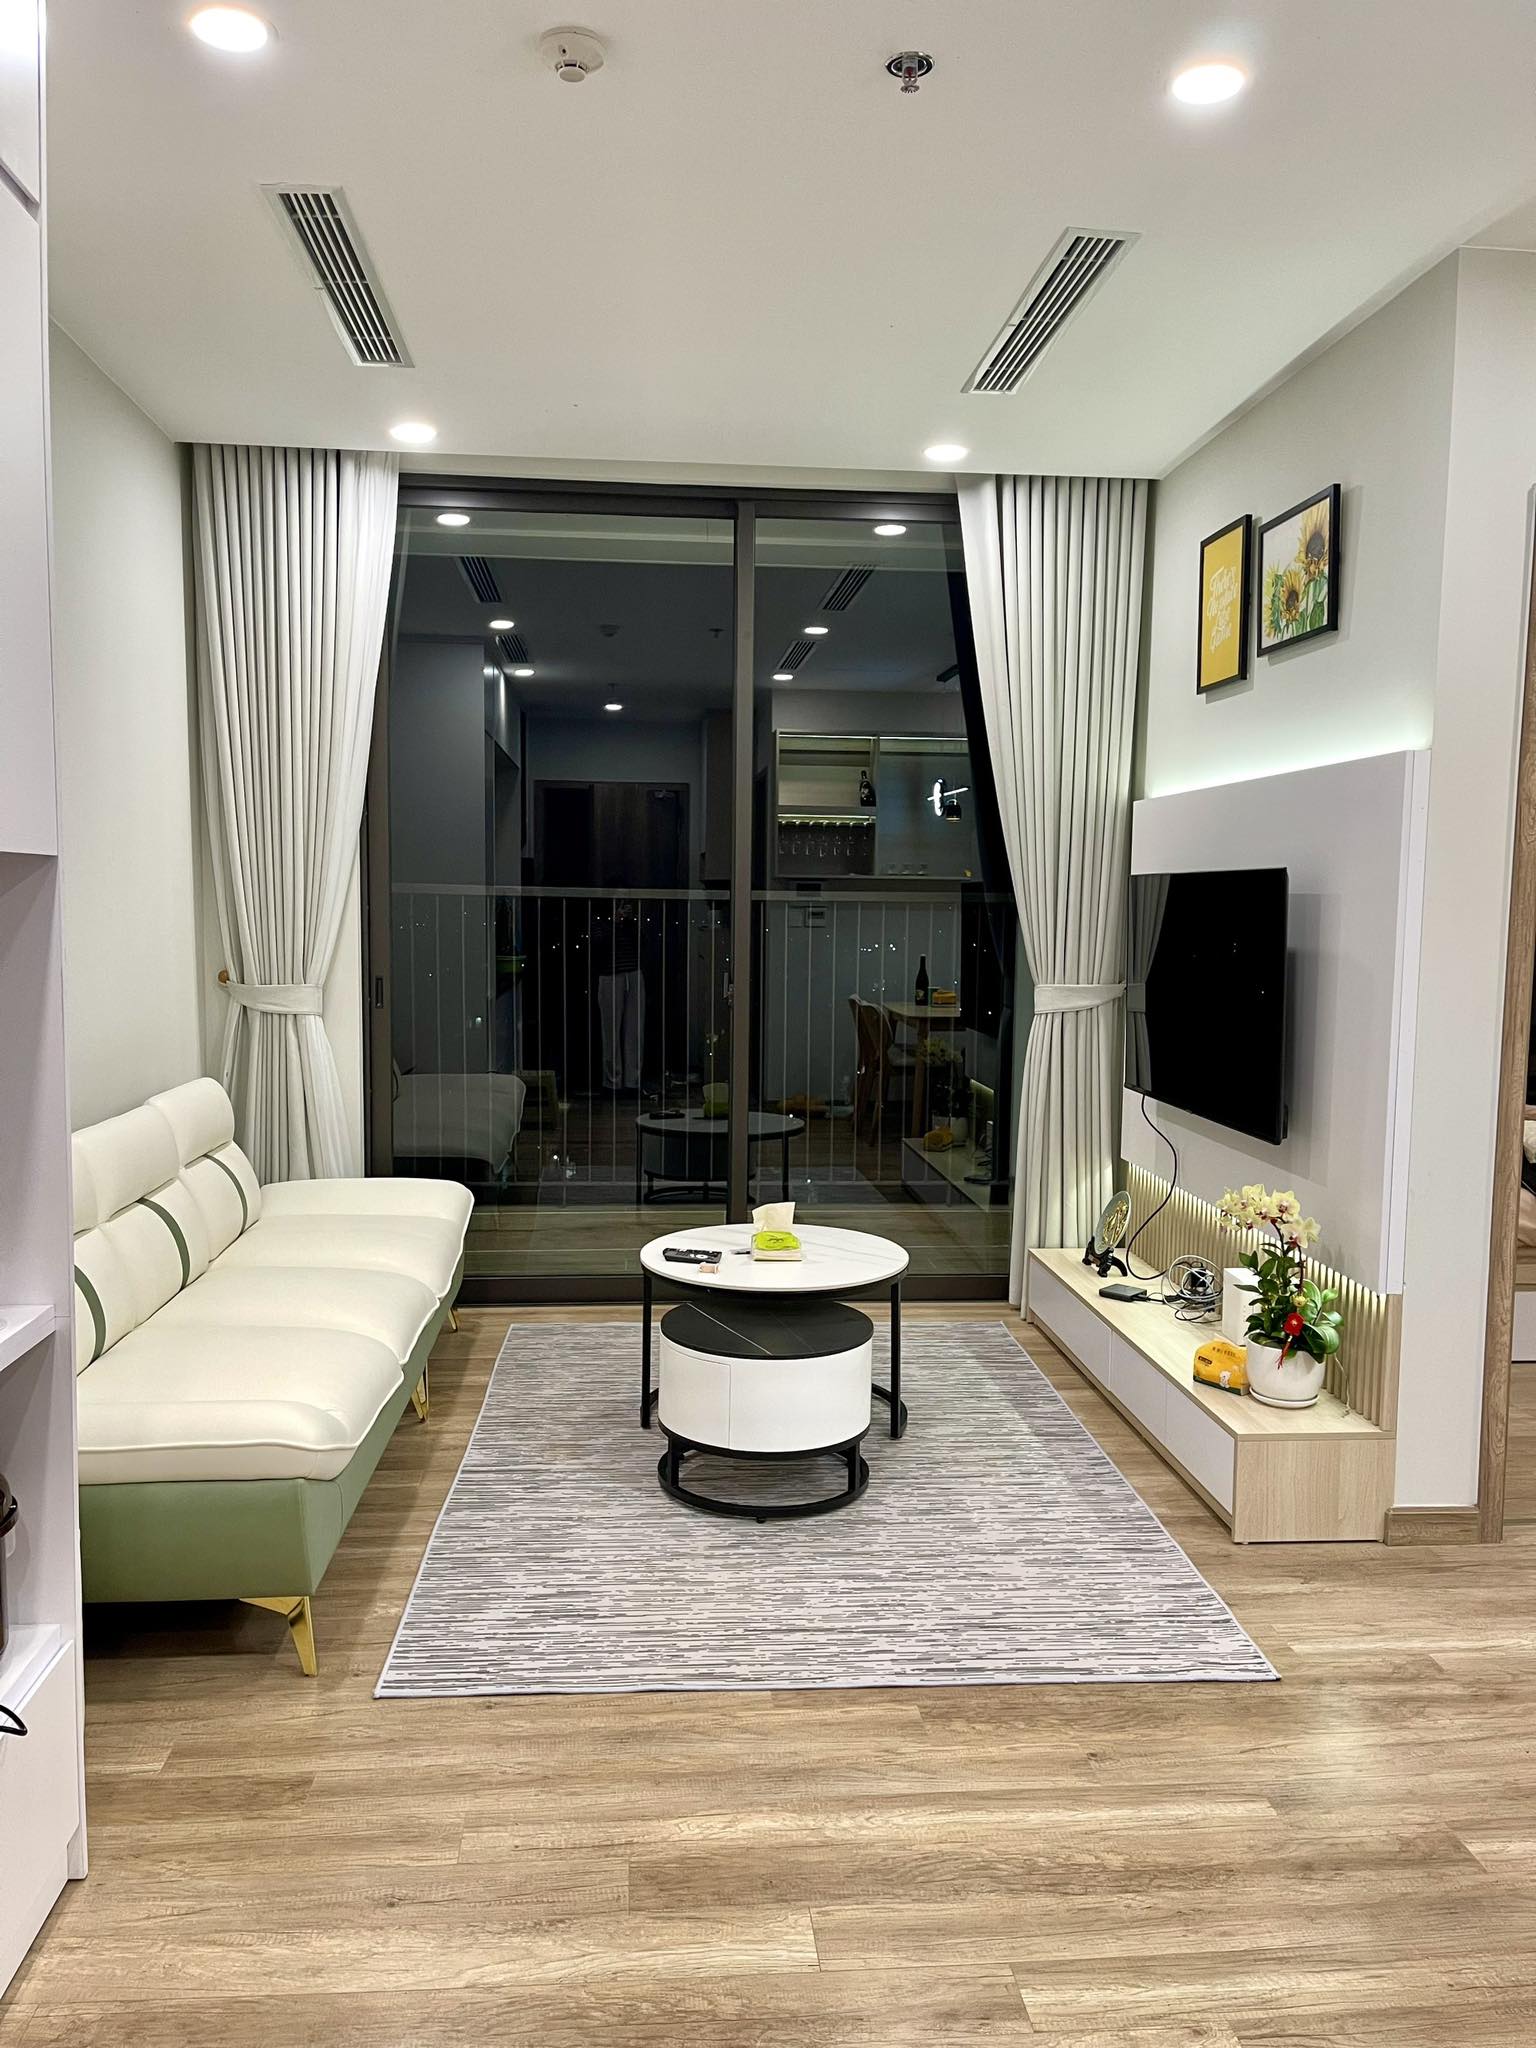 Cần thuê căn hộ Duplex 150m2 hoàn thiện đẹp, full nội thất tòa Onsen Ecopark cửa sổ kính chạm sàn